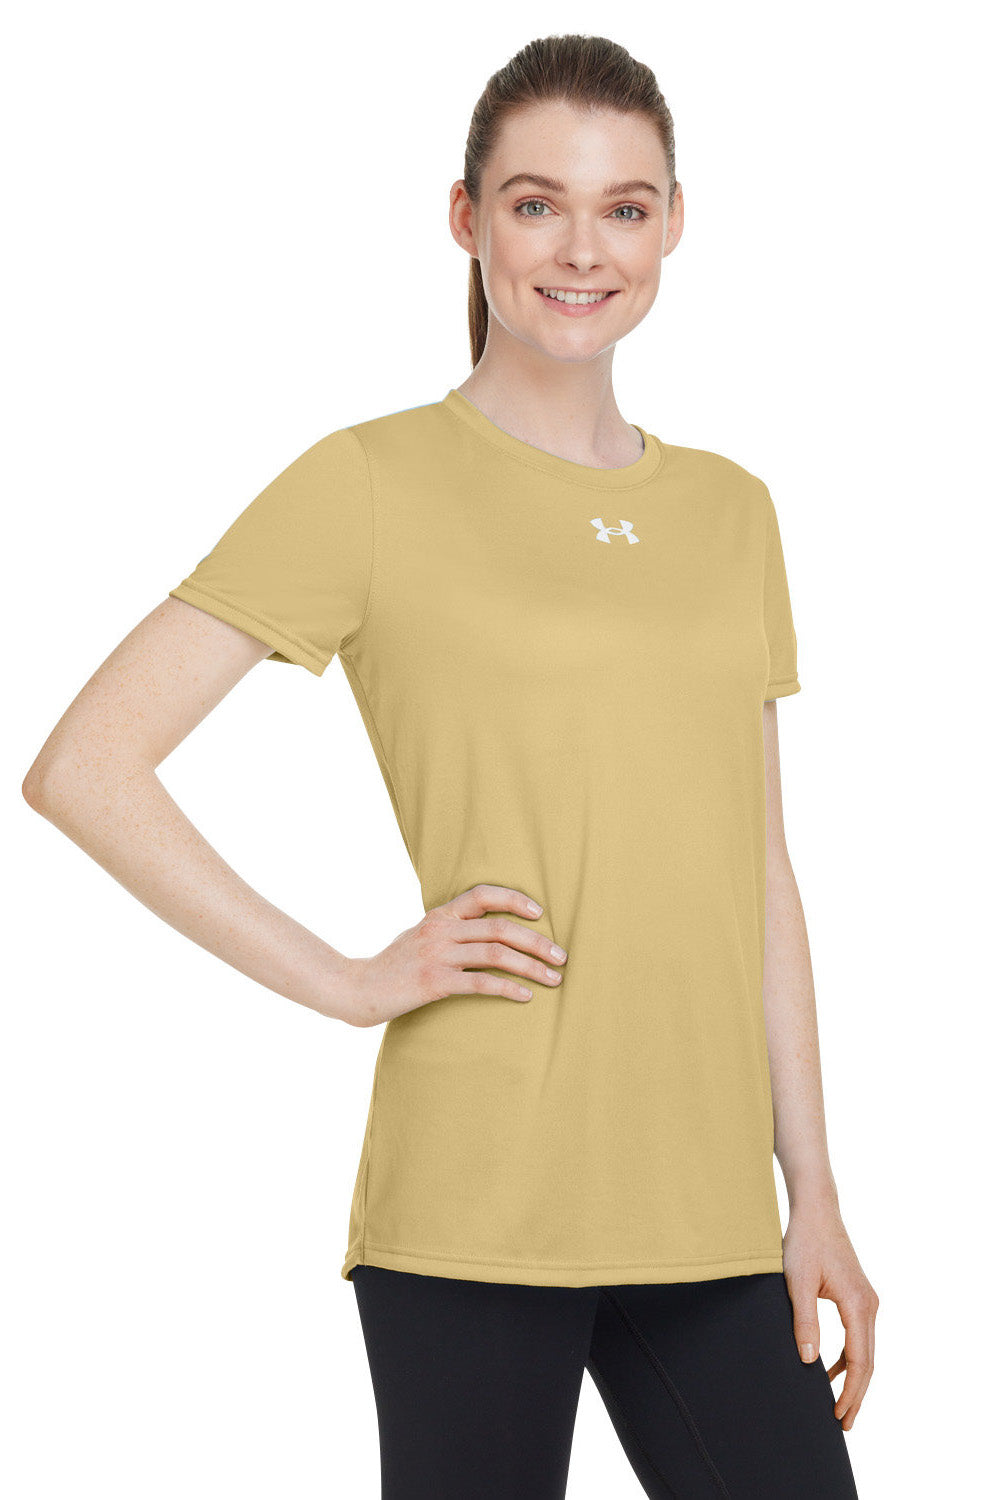 Under Armour 1376847 Womens Team Tech Moisture Wicking Short Sleeve Crewneck T-Shirt Vegas Gold Model 3Q